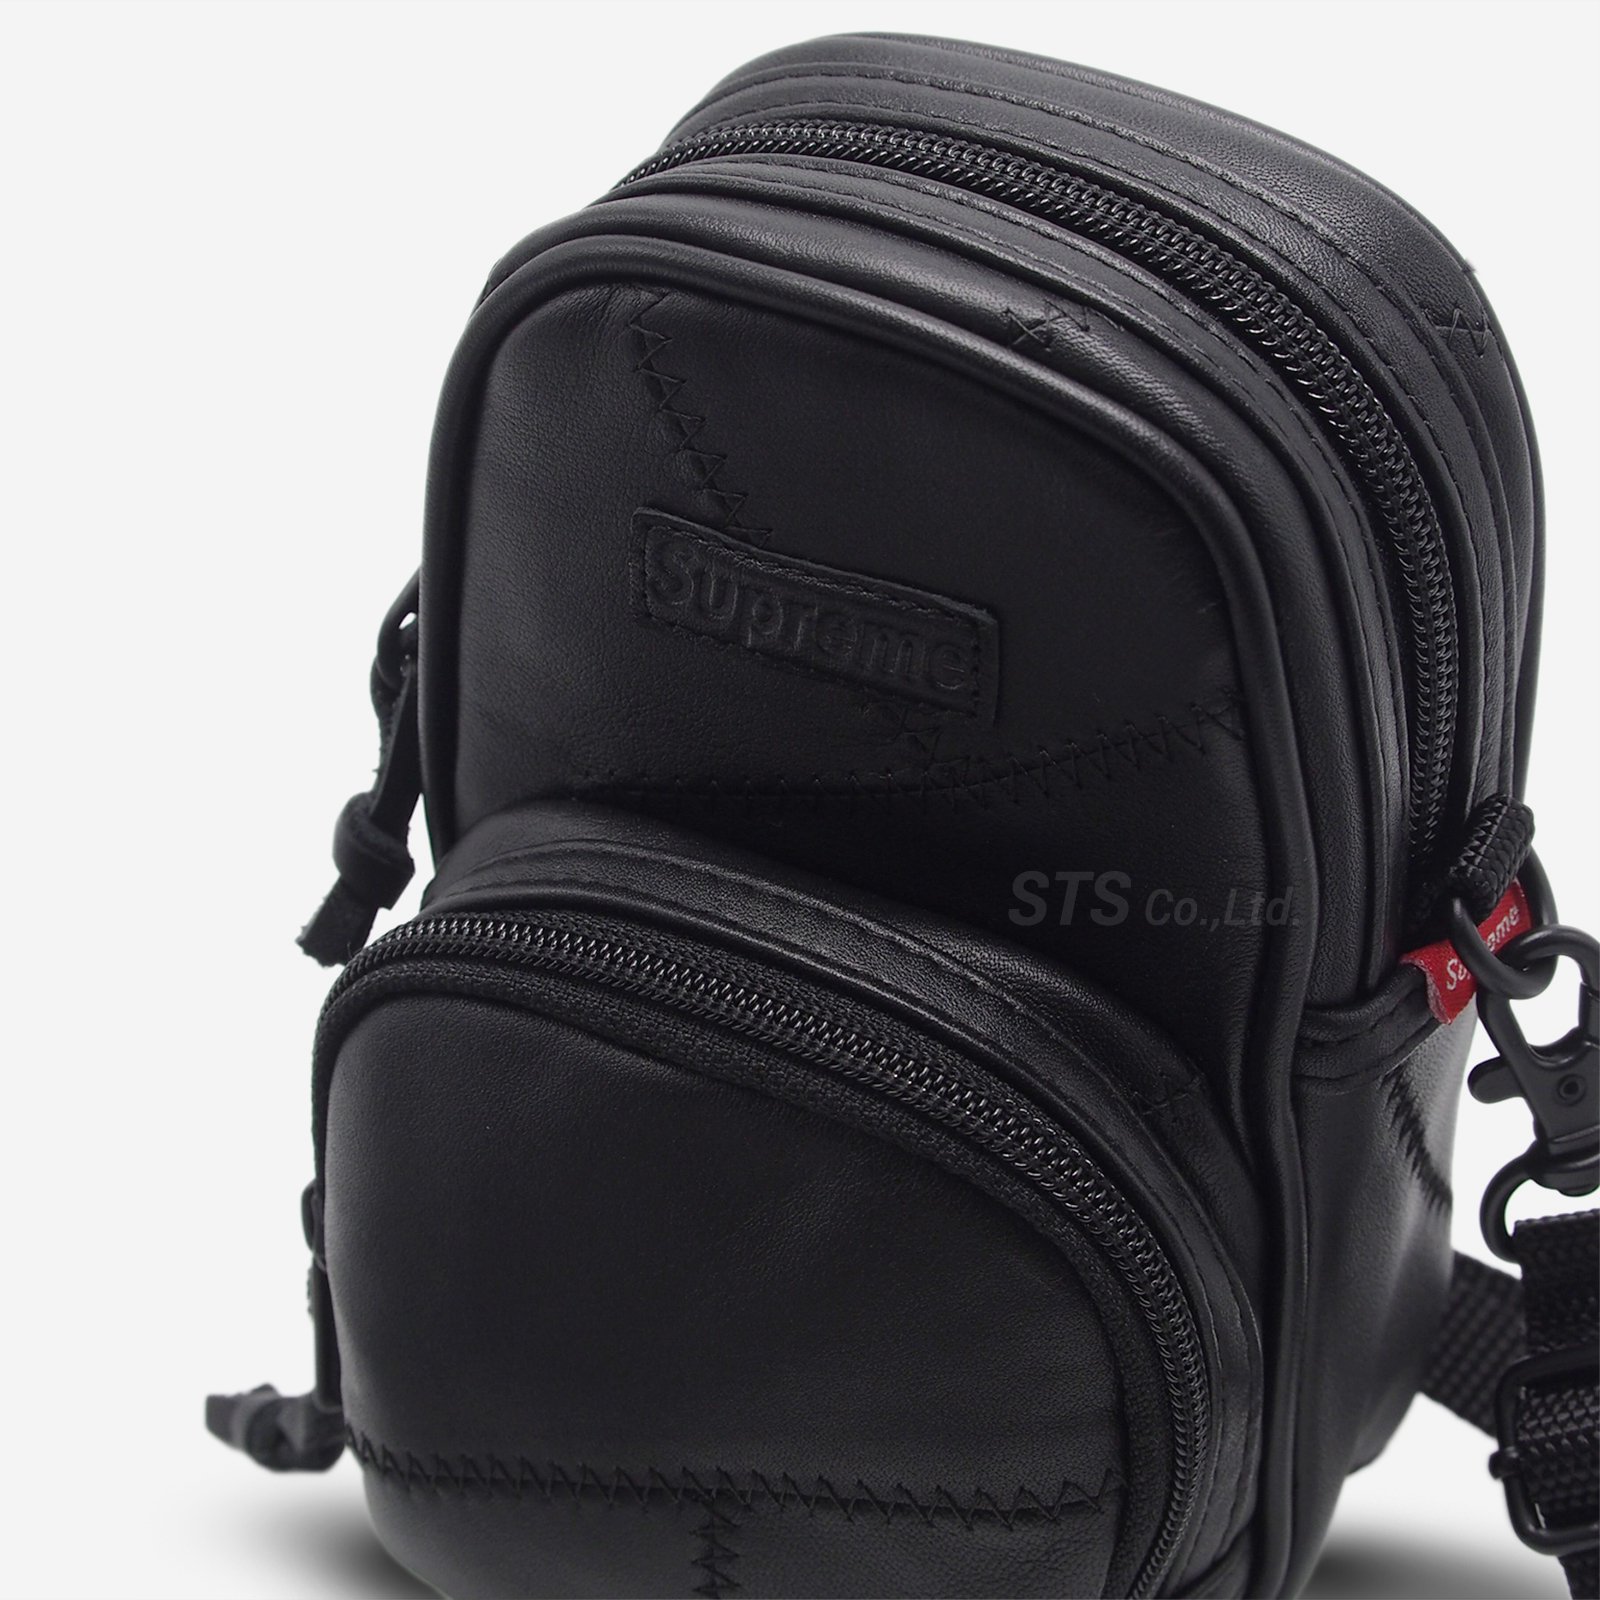 Supreme - Patchwork Leather Small Shoulder Bag - ParkSIDER